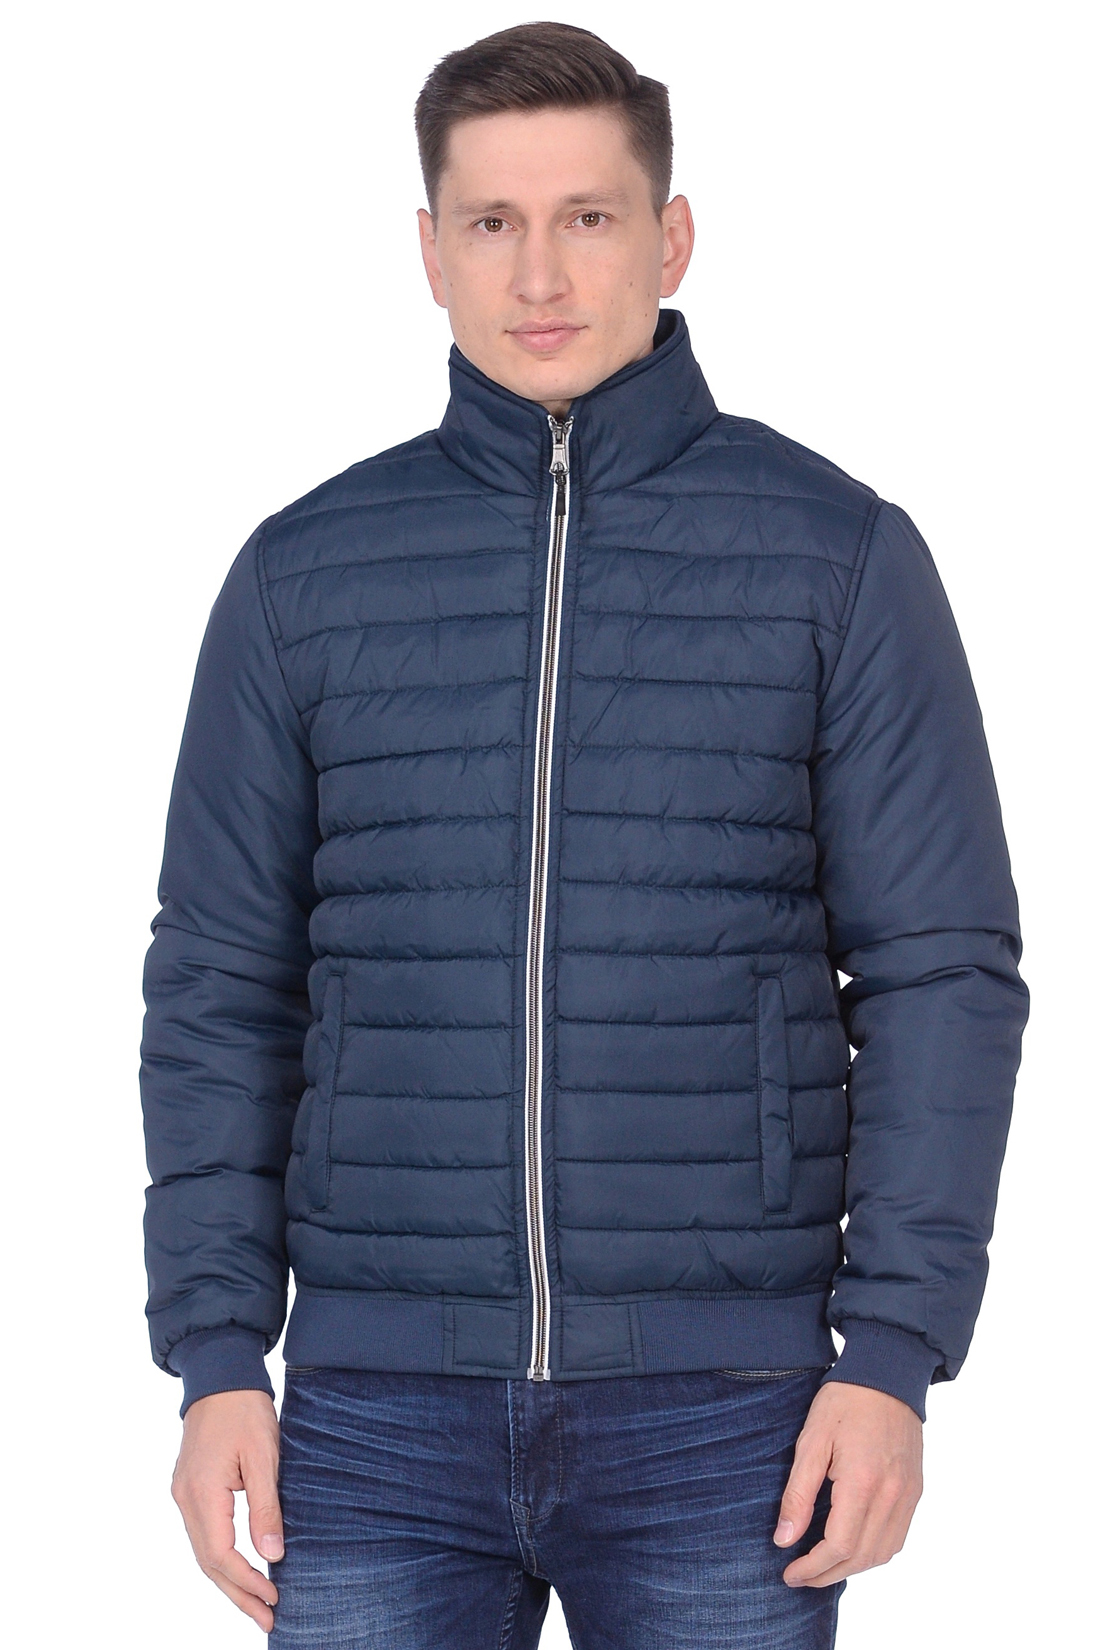 Стёганая куртка с резинками-рибана (арт. baon B538559), размер S, цвет синий Стёганая куртка с резинками-рибана (арт. baon B538559) - фото 1